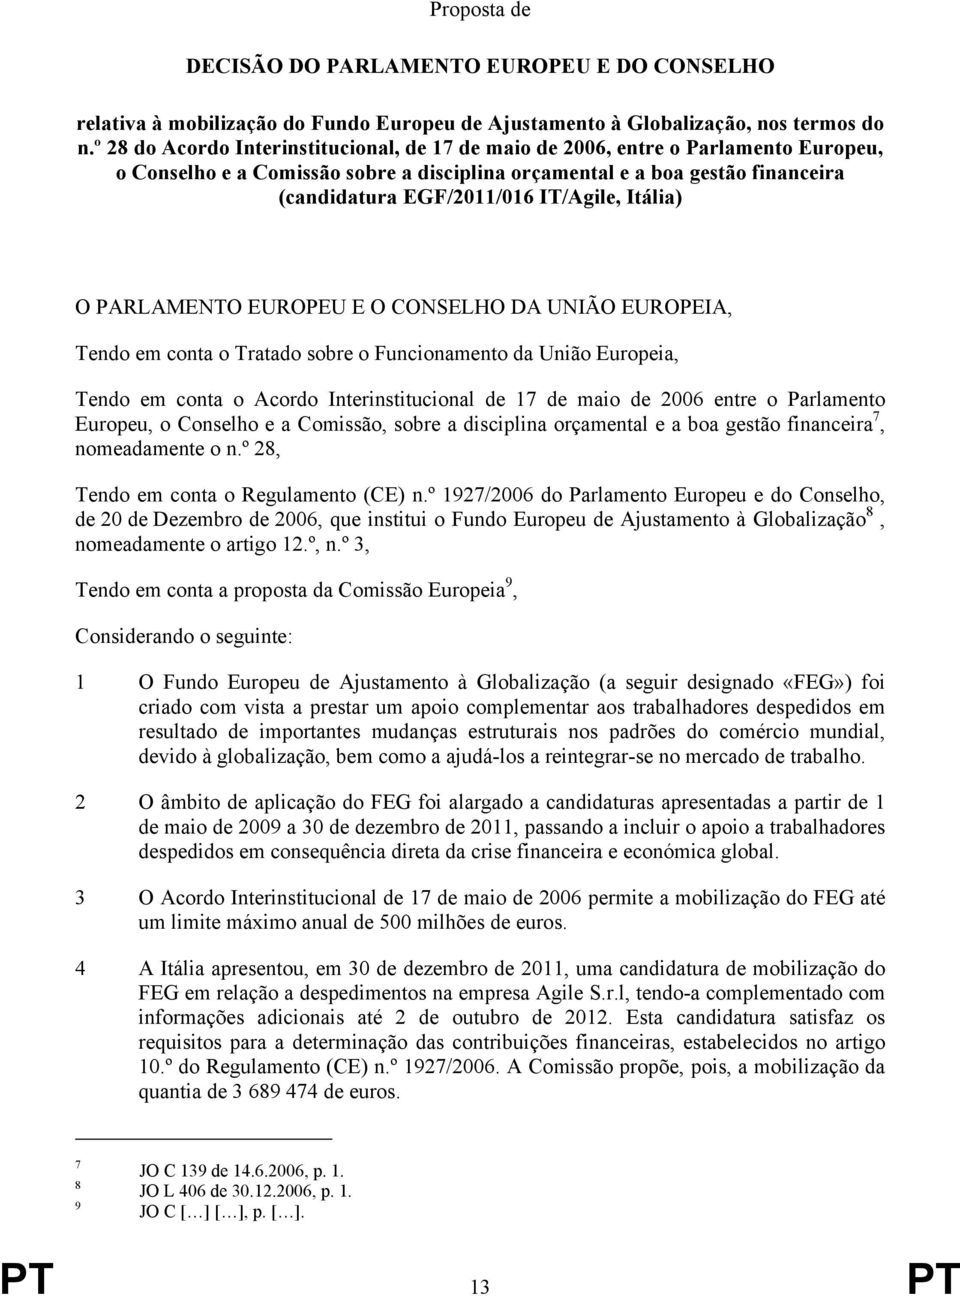 IT/Agile, Itália) O PARLAMENTO EUROPEU E O CONSELHO DA UNIÃO EUROPEIA, Tendo em conta o Tratado sobre o Funcionamento da União Europeia, Tendo em conta o Acordo Interinstitucional de 17 de maio de